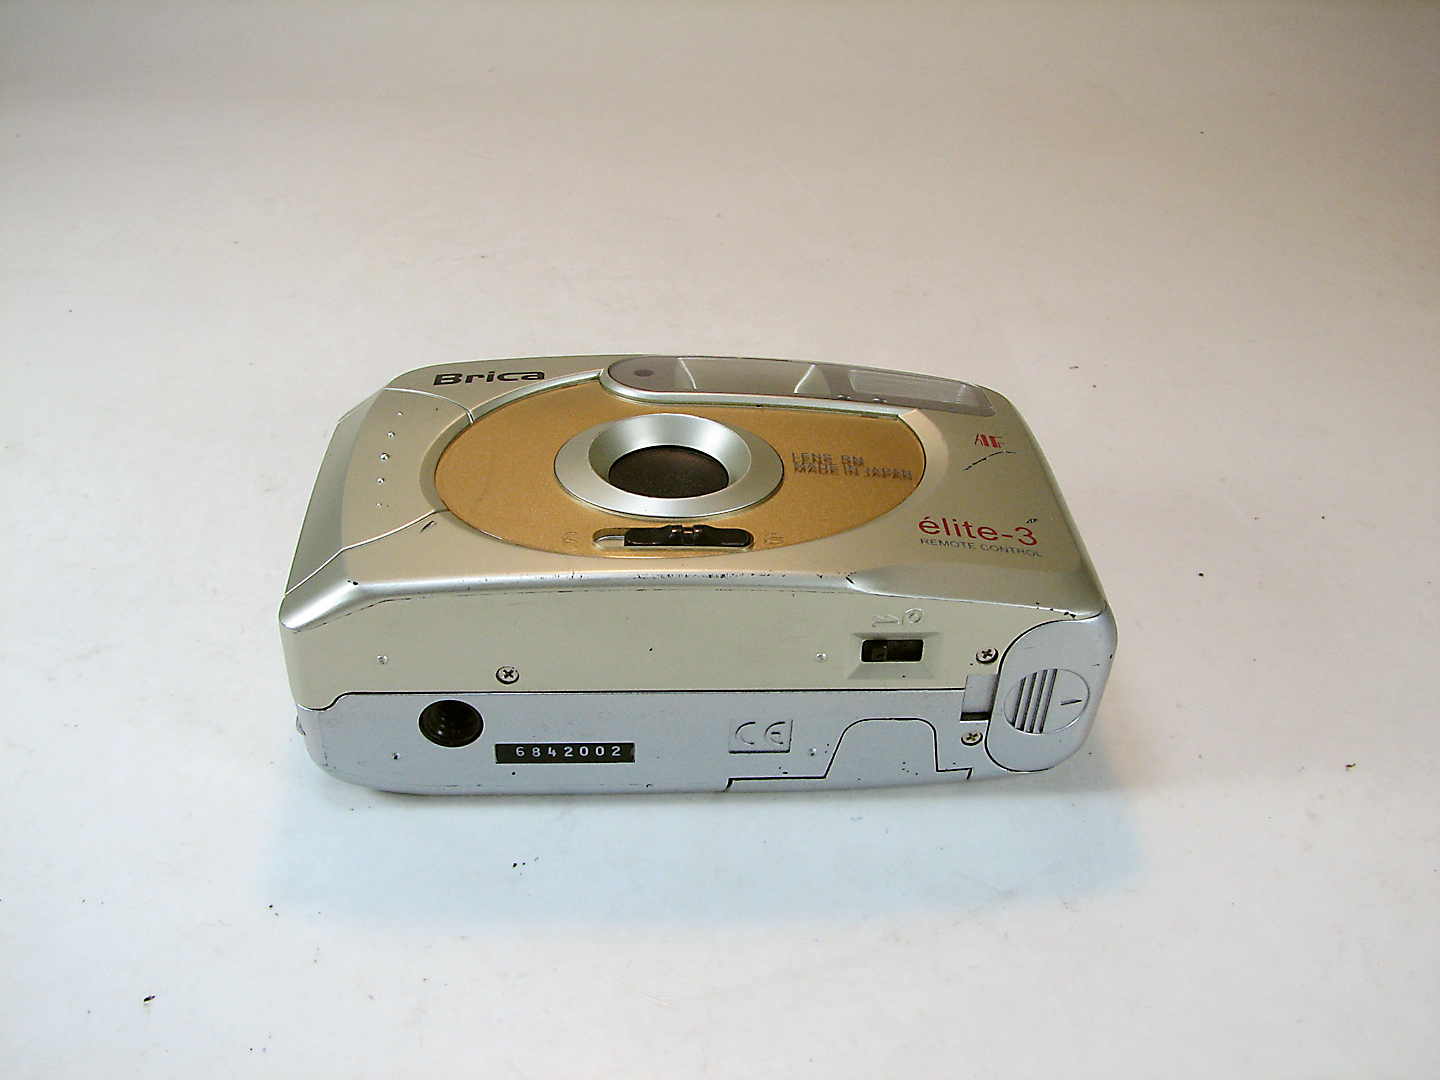 دوربین قدیمی و کلکسیونی BRICA ELITE - 3